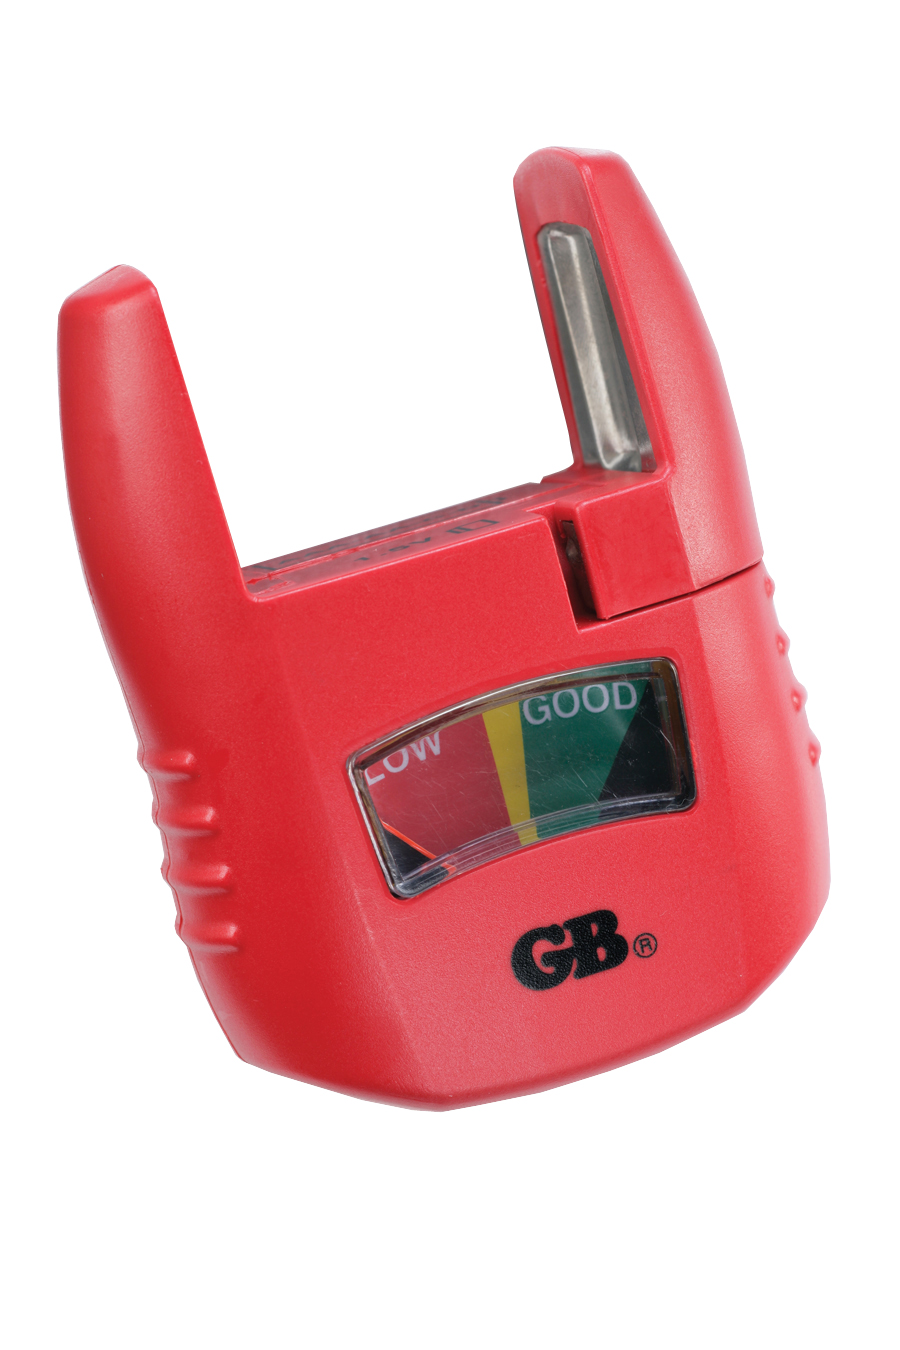 GB&reg; Gardner Bender Analog Battery Tester